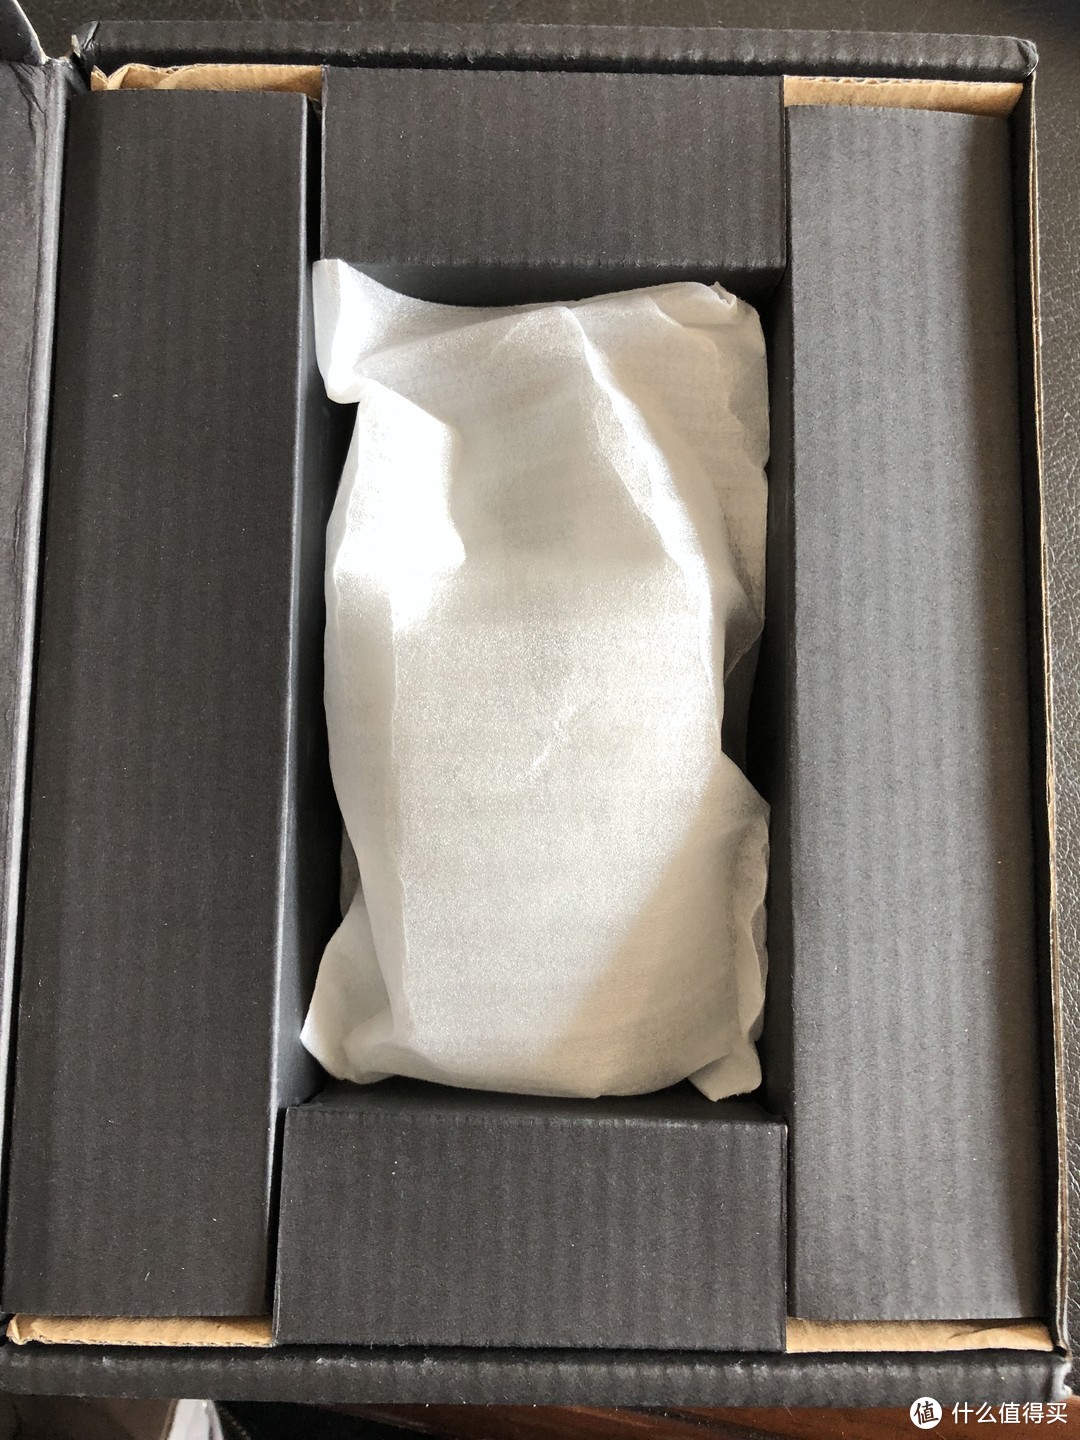 ▲打开盒子就是鼠标本体了，就一个塑料袋装着，感觉比较简陋。